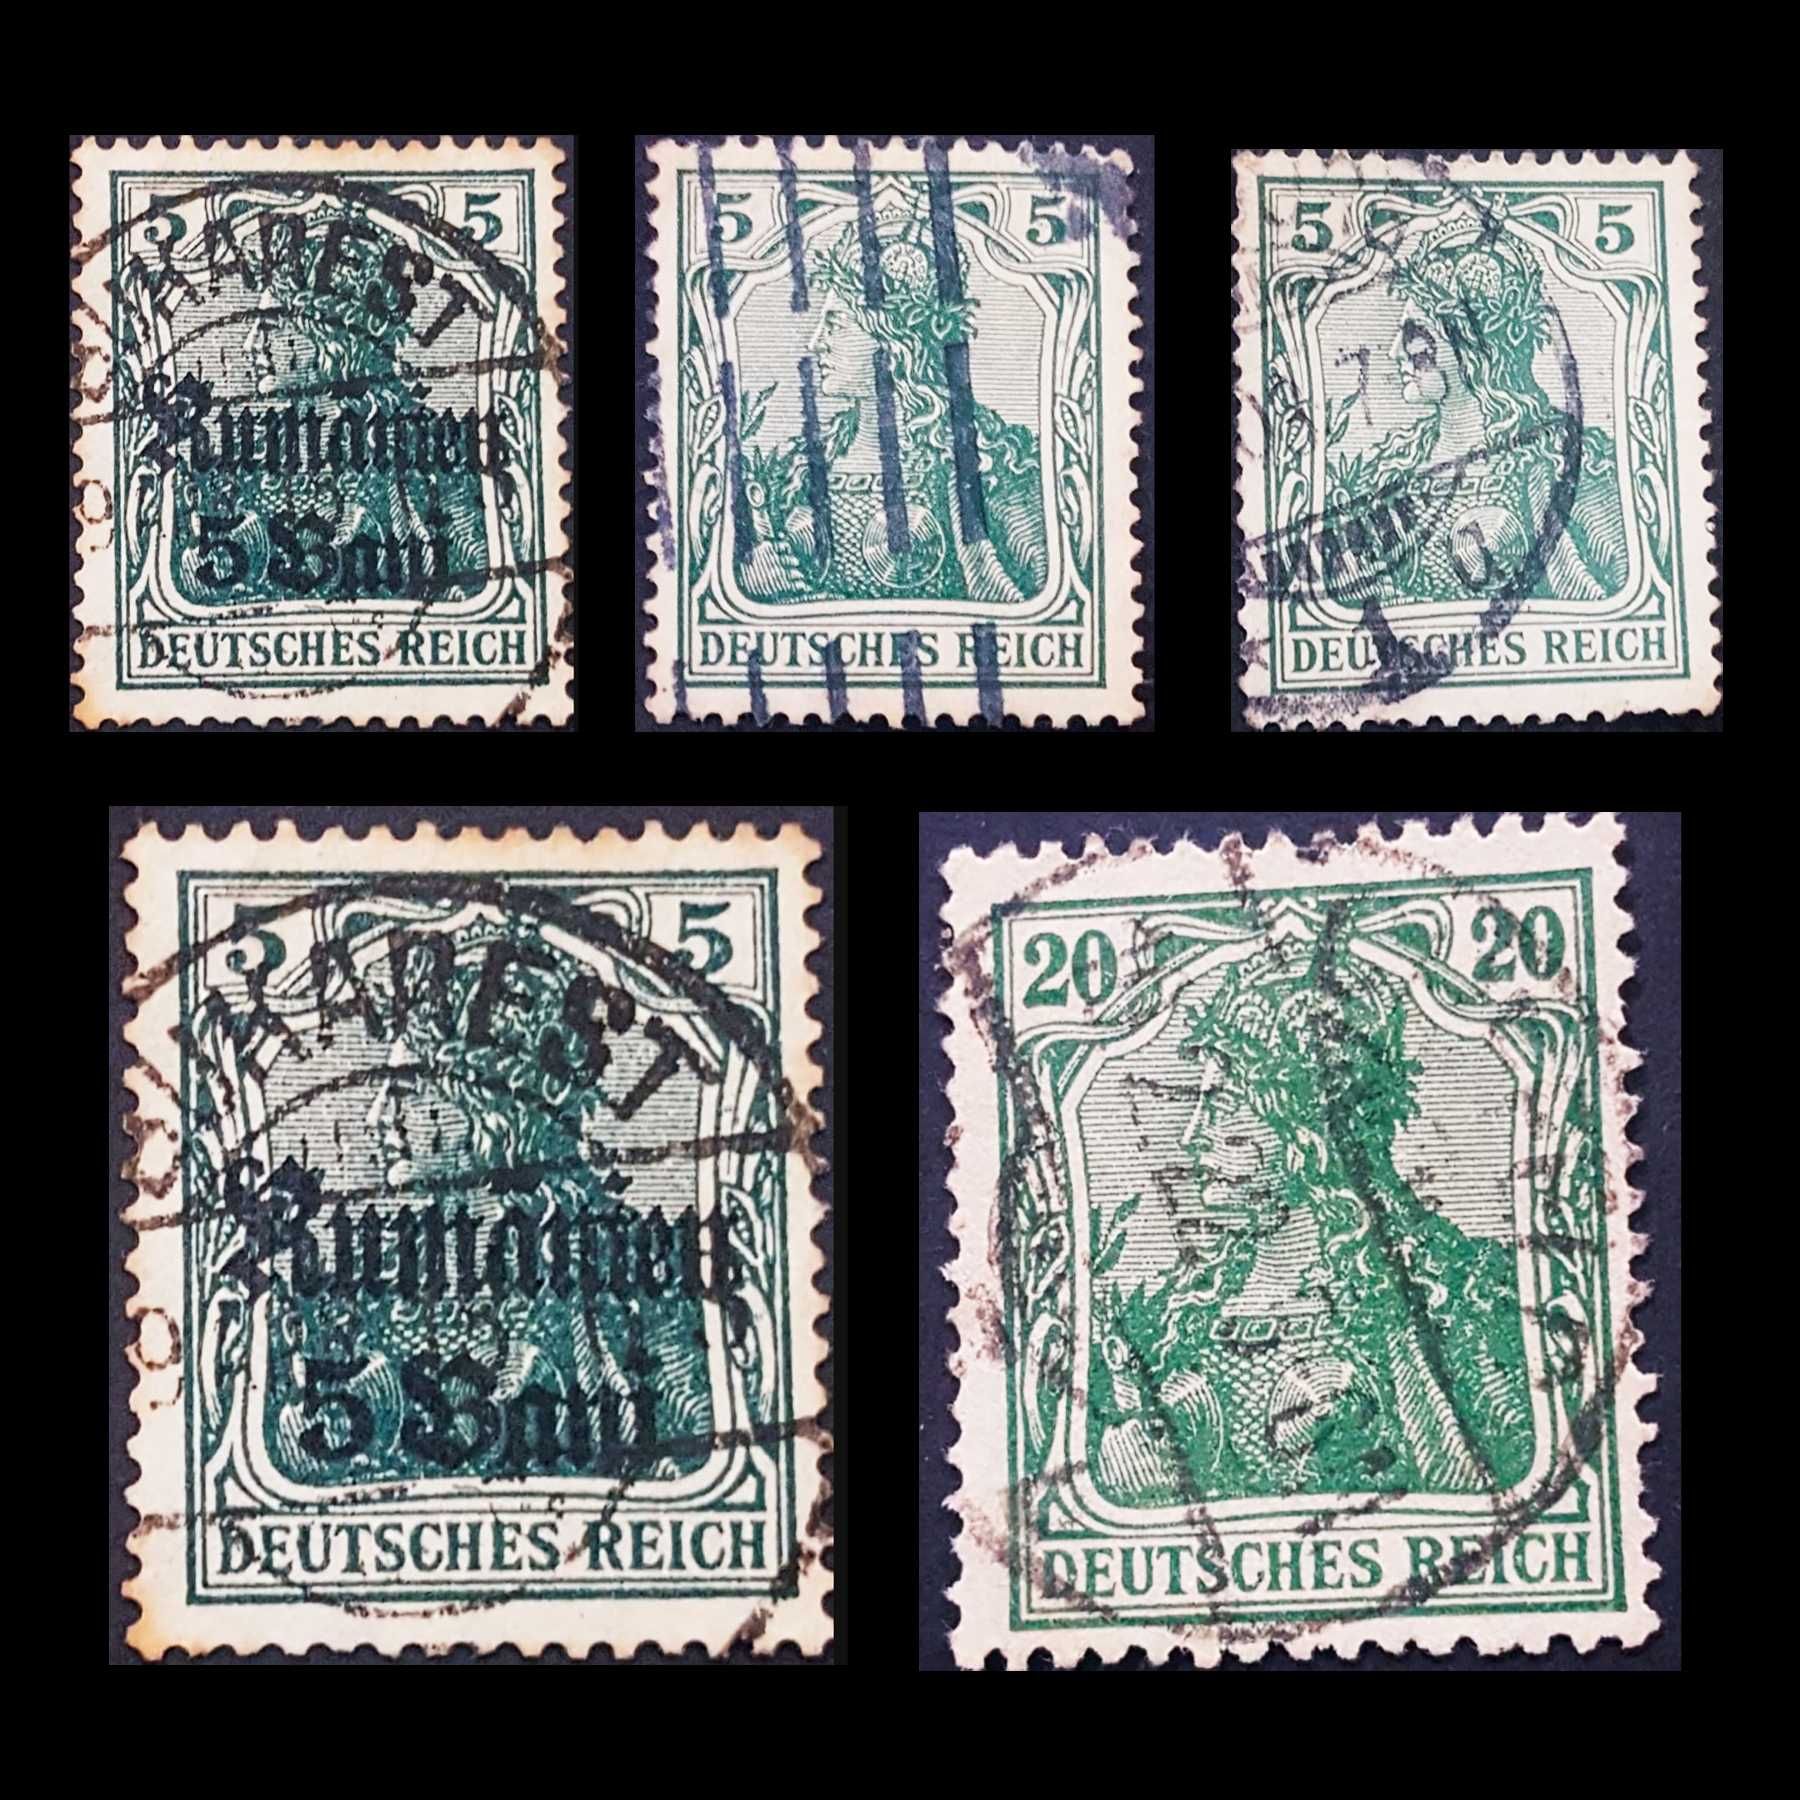 Coleção de selos raros - valor negociavél